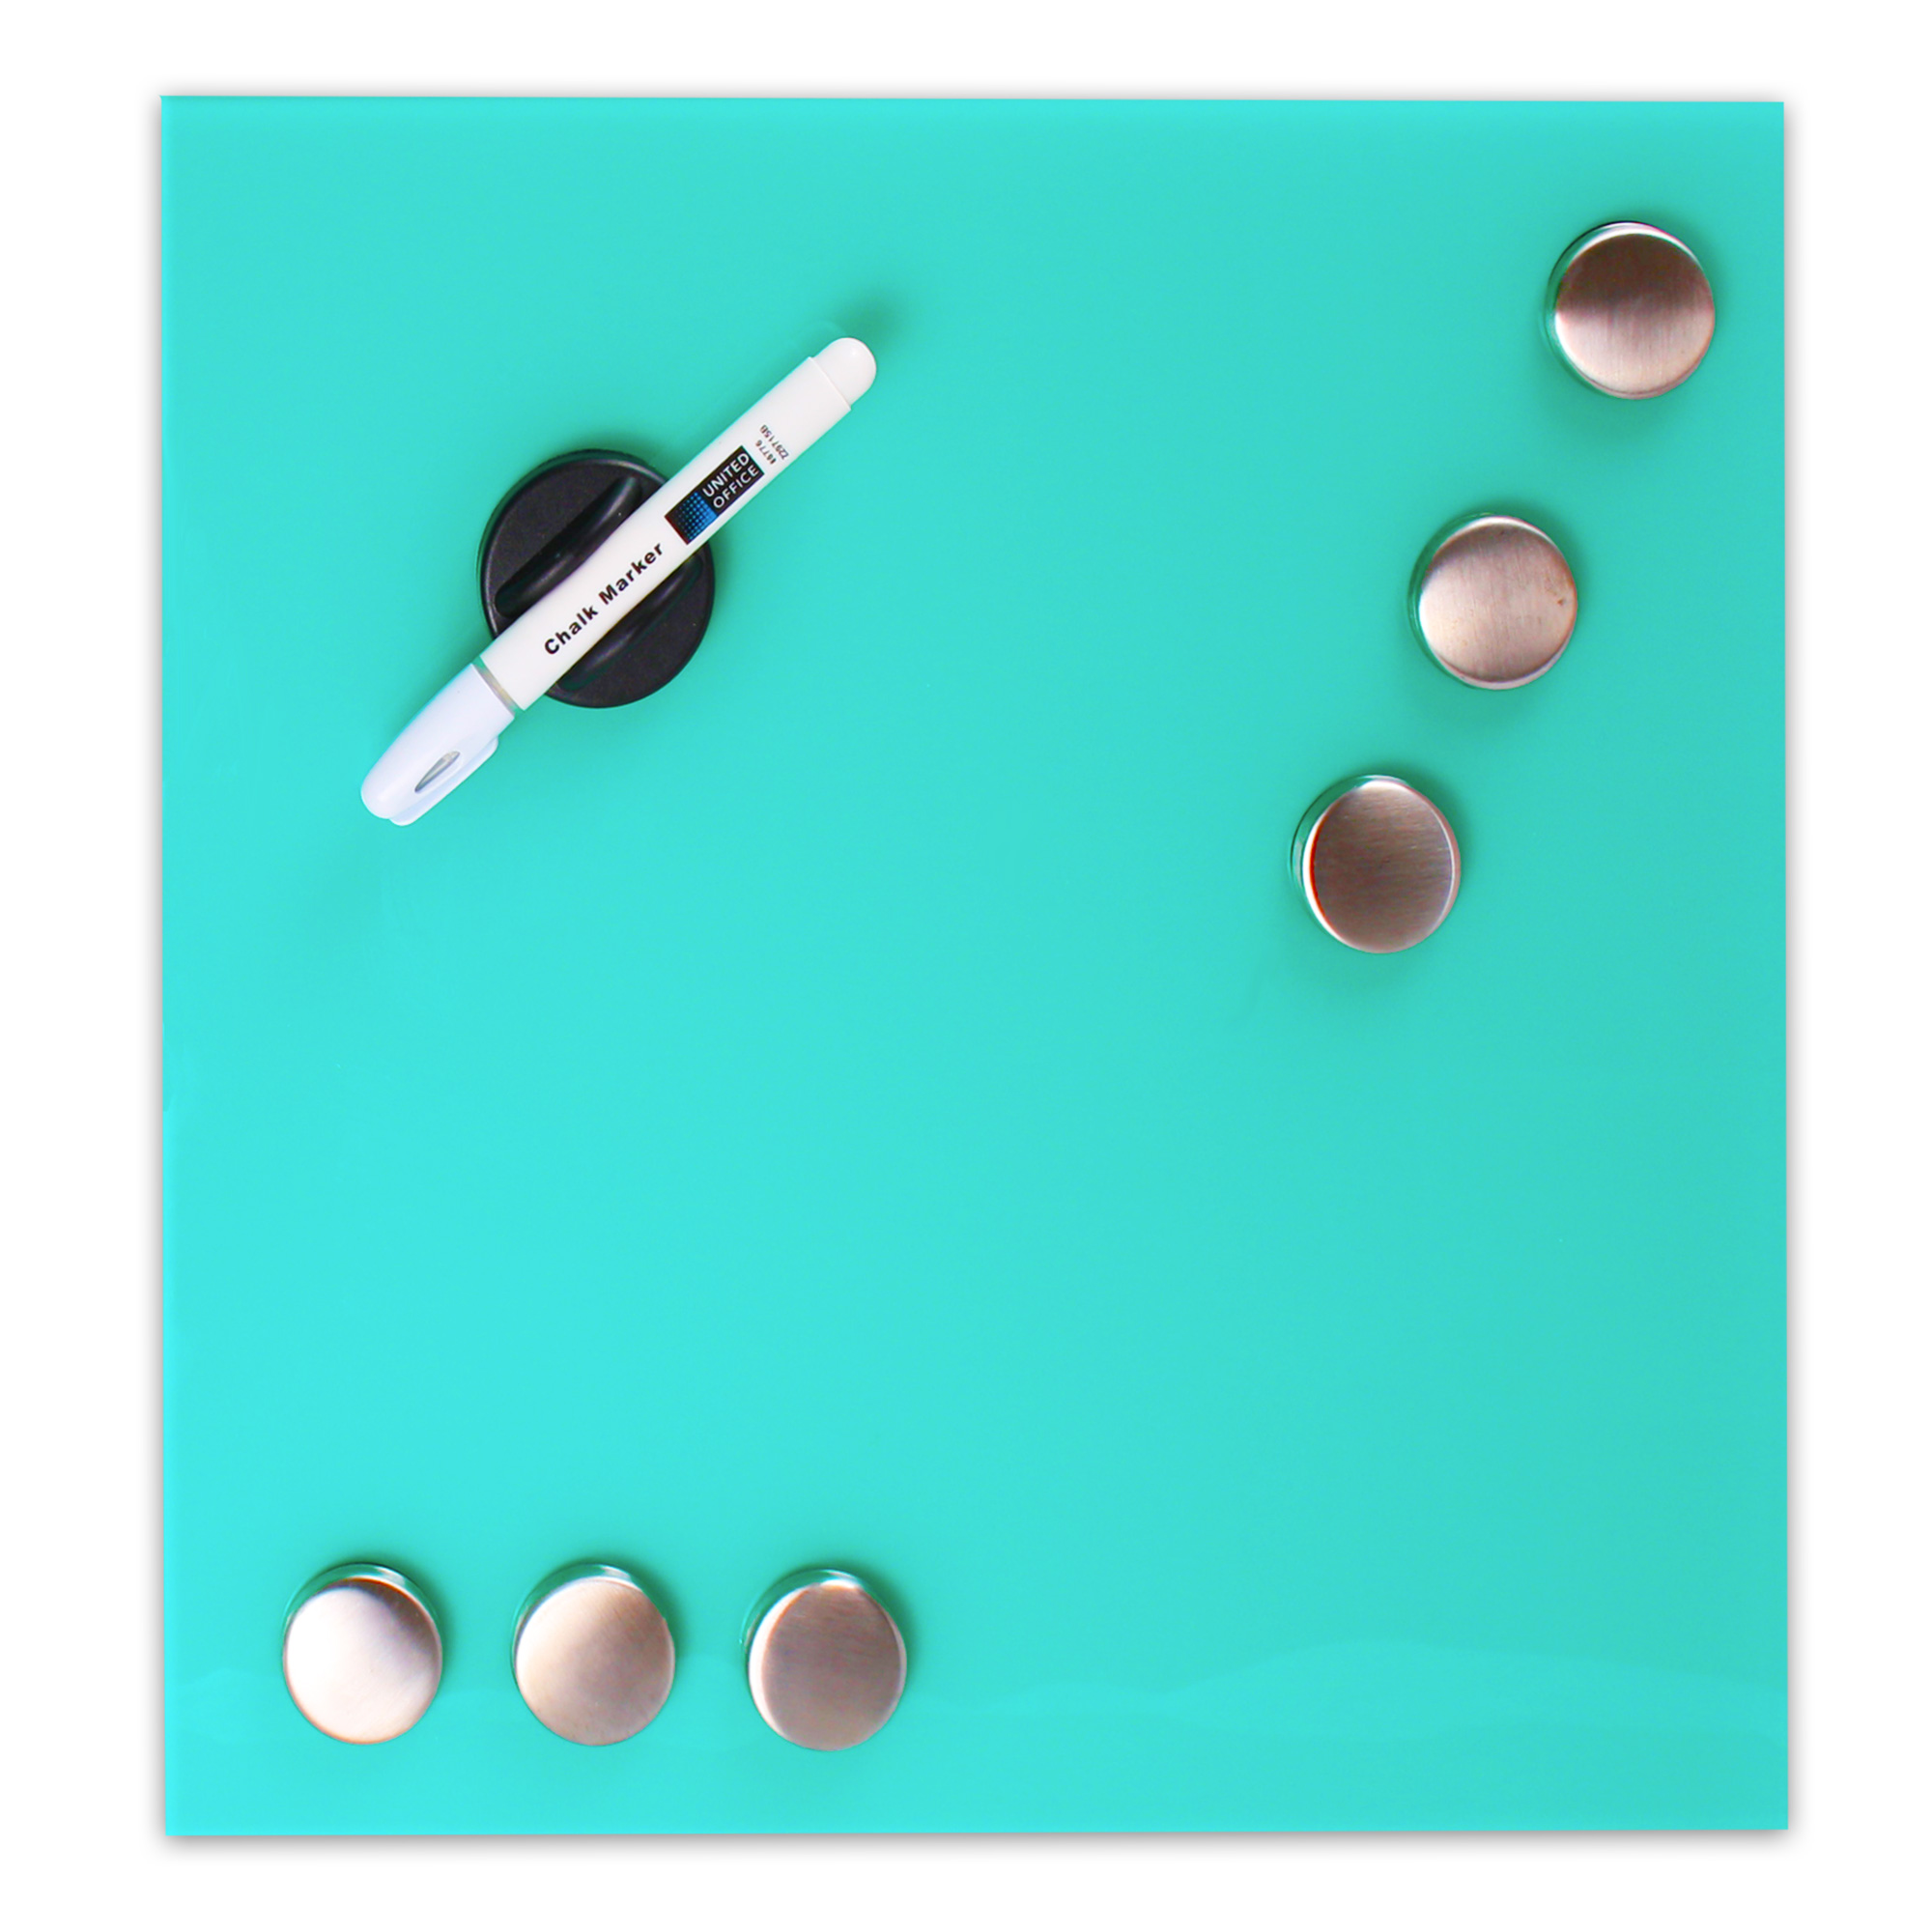 Memoboard Memo Board Whiteboard Magnet Board Magnet Wall Pin Board Turquoise Ebay